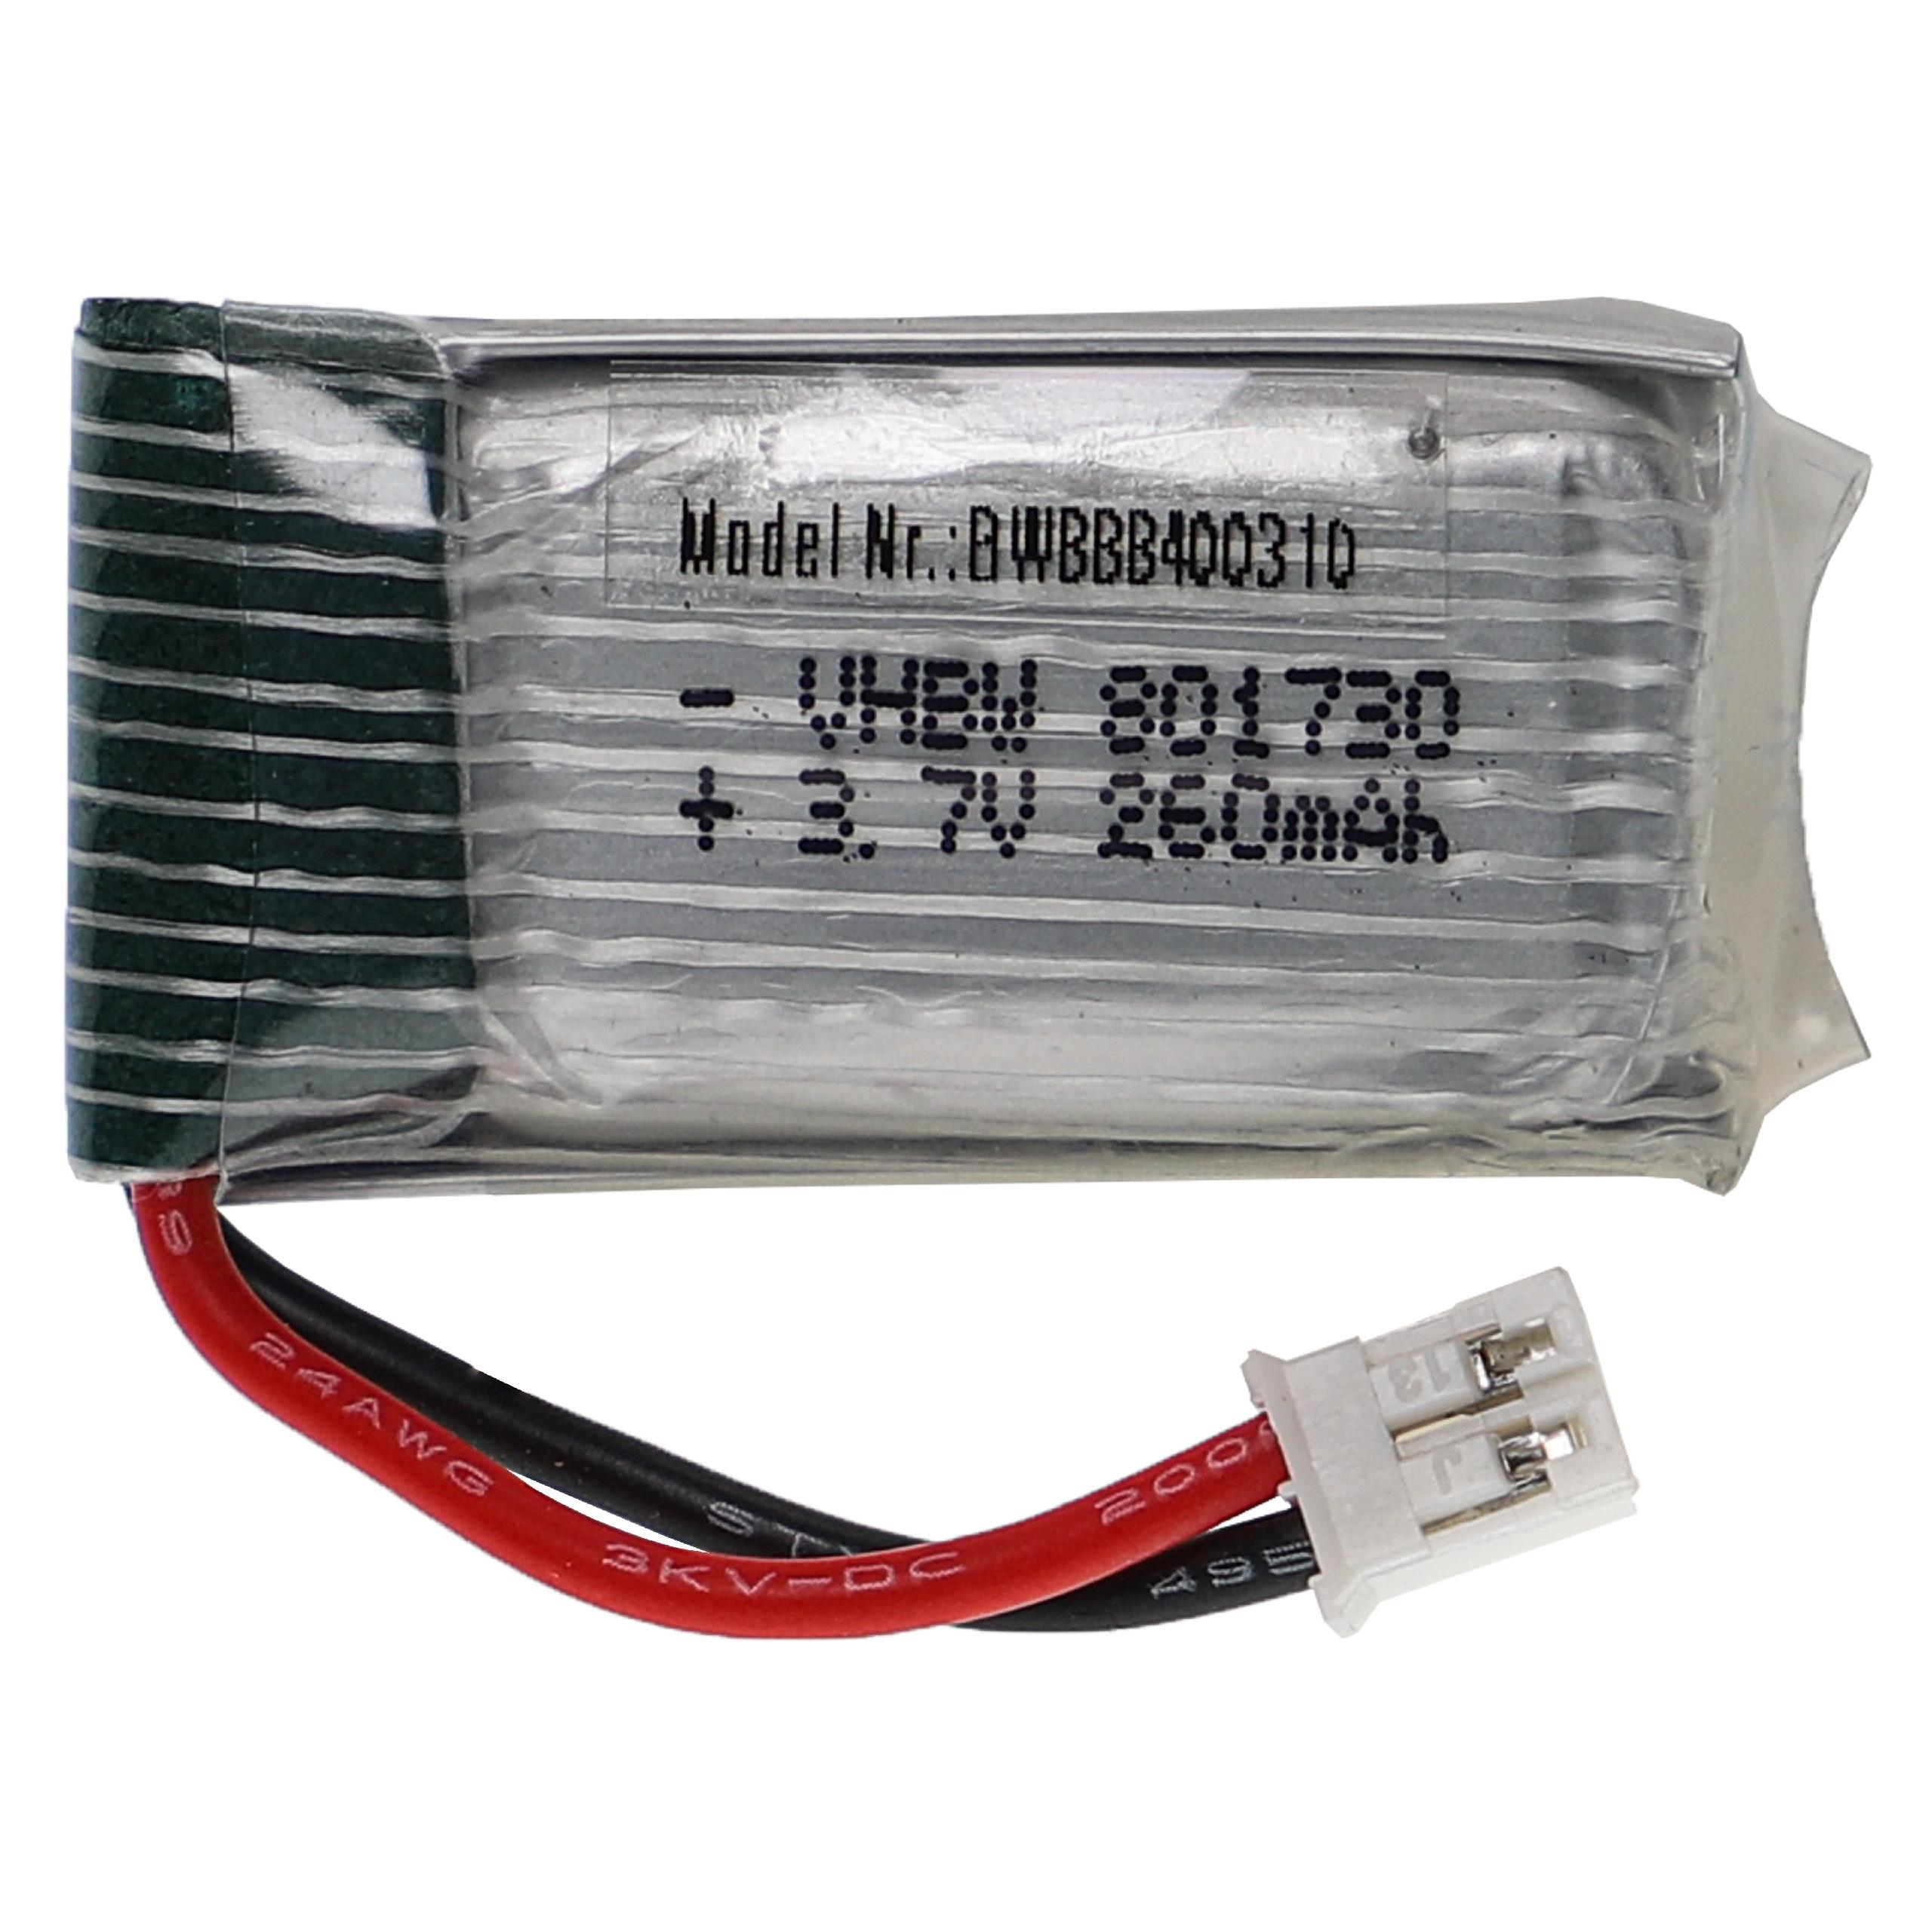 Akumulator do modeli zdalnie sterowanych RC - 260 mAh 3,7 V LiPo, PH 2.0 2P